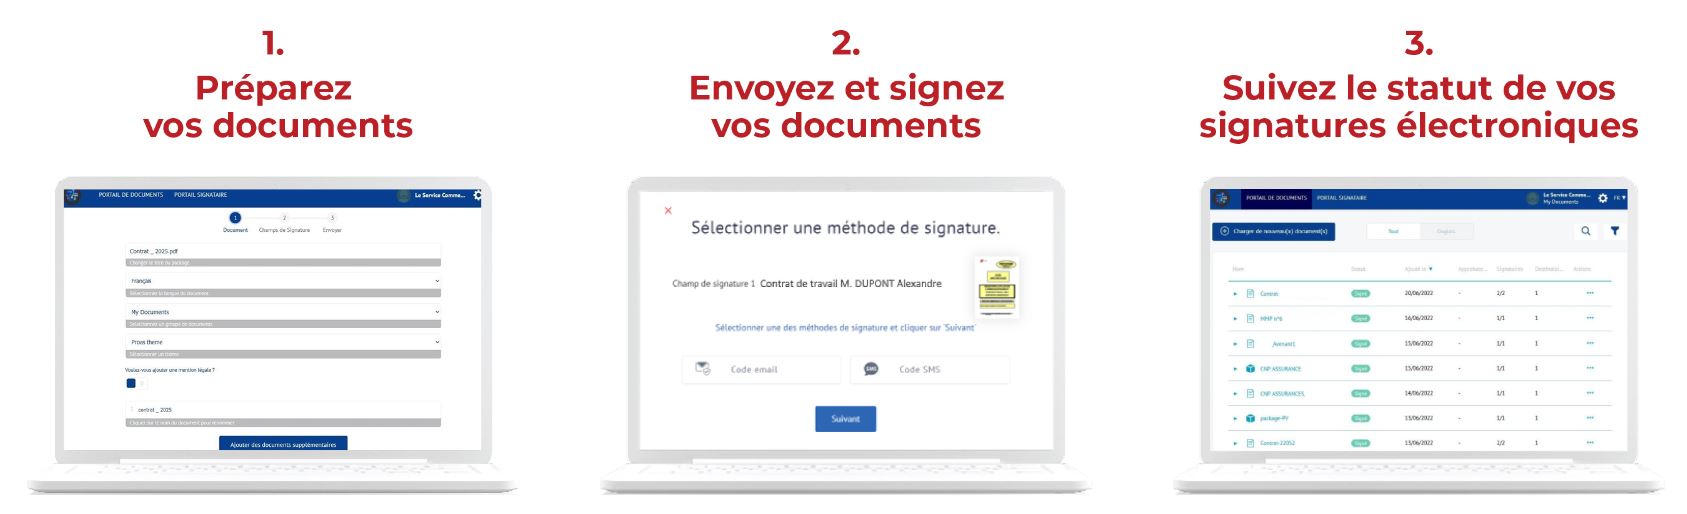 Processus de signature électronique des documents